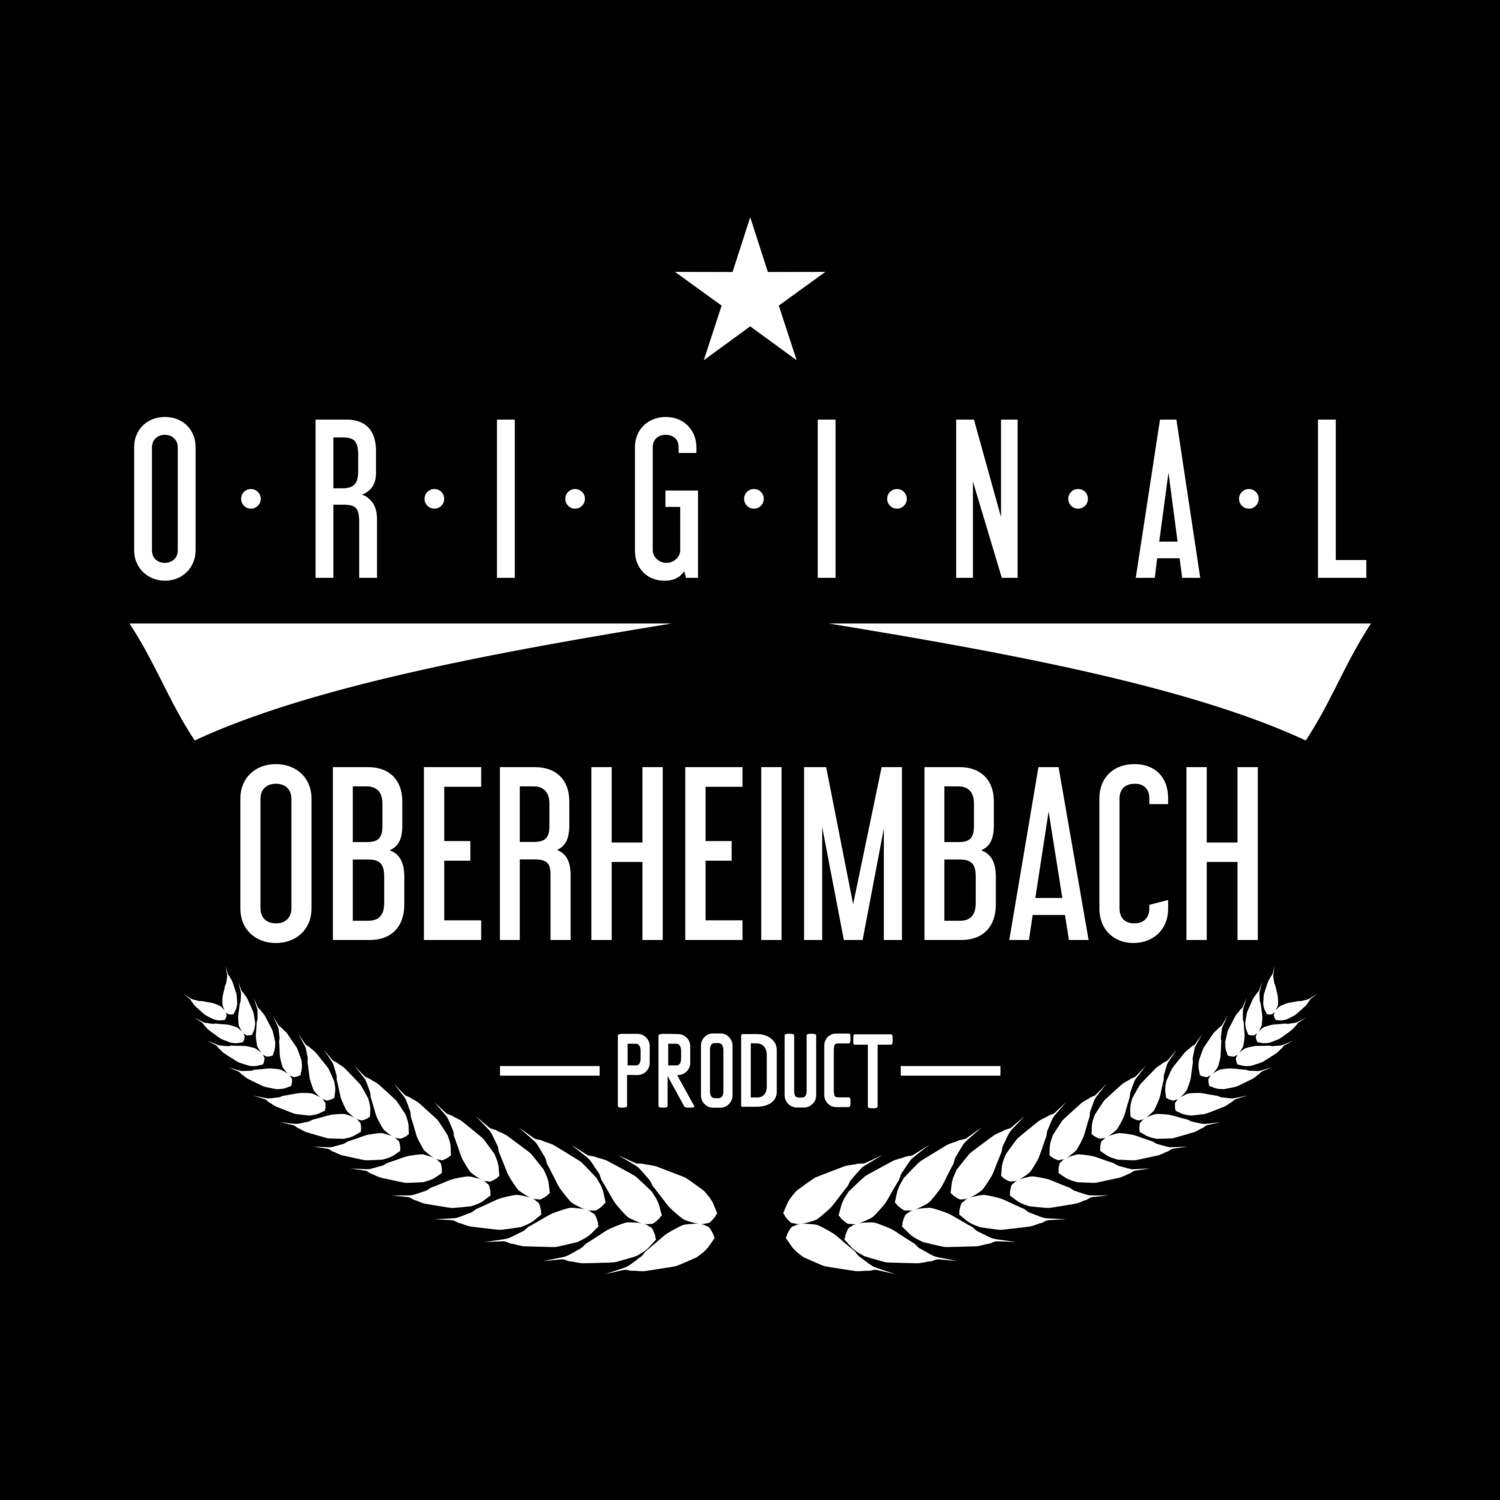 Oberheimbach T-Shirt »Original Product«